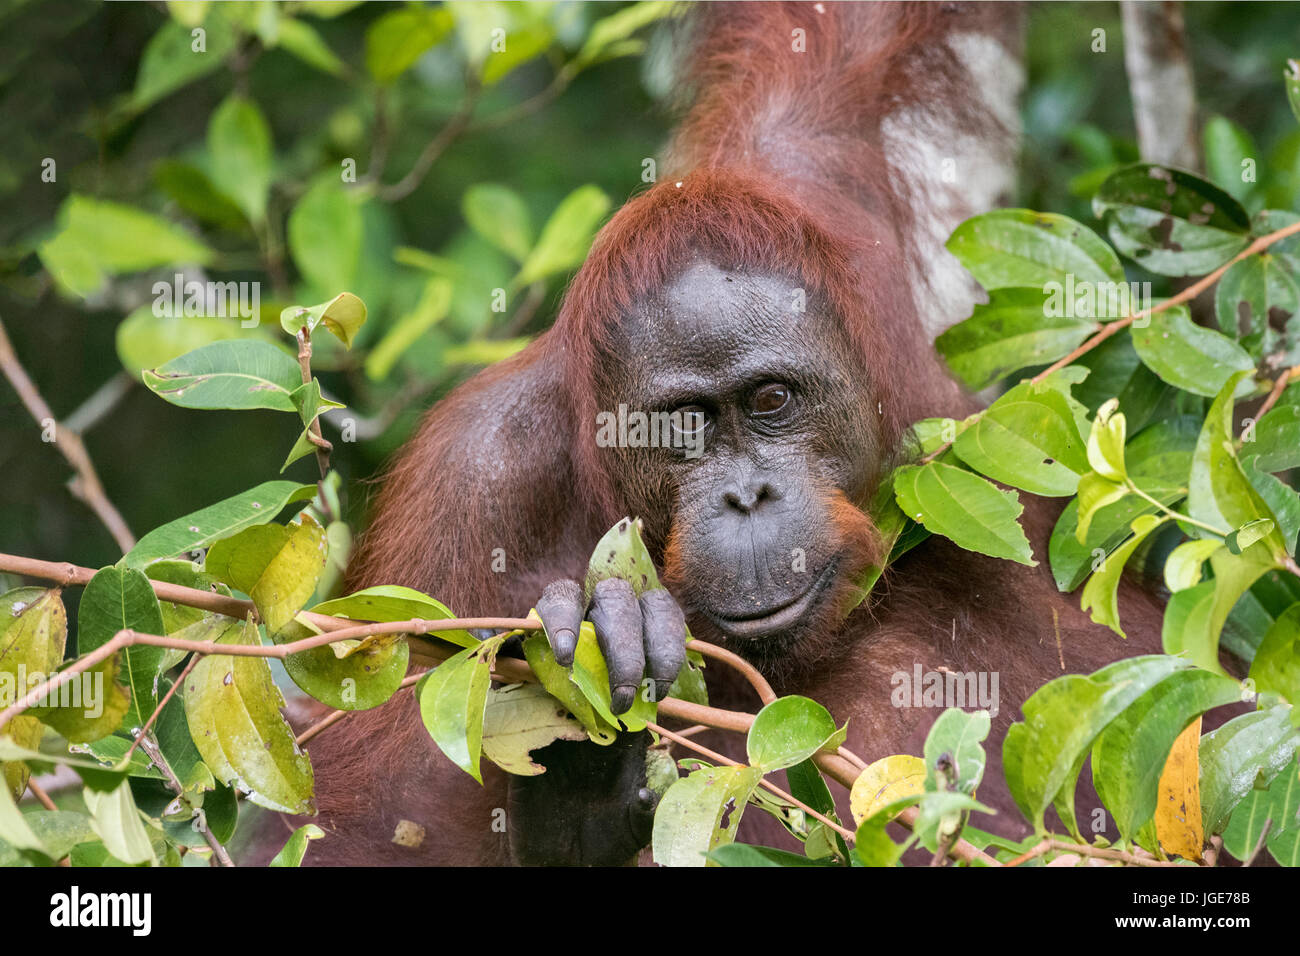 Curosity, wild orangutan nelle boccole dal fiume Sekonyer Foto Stock